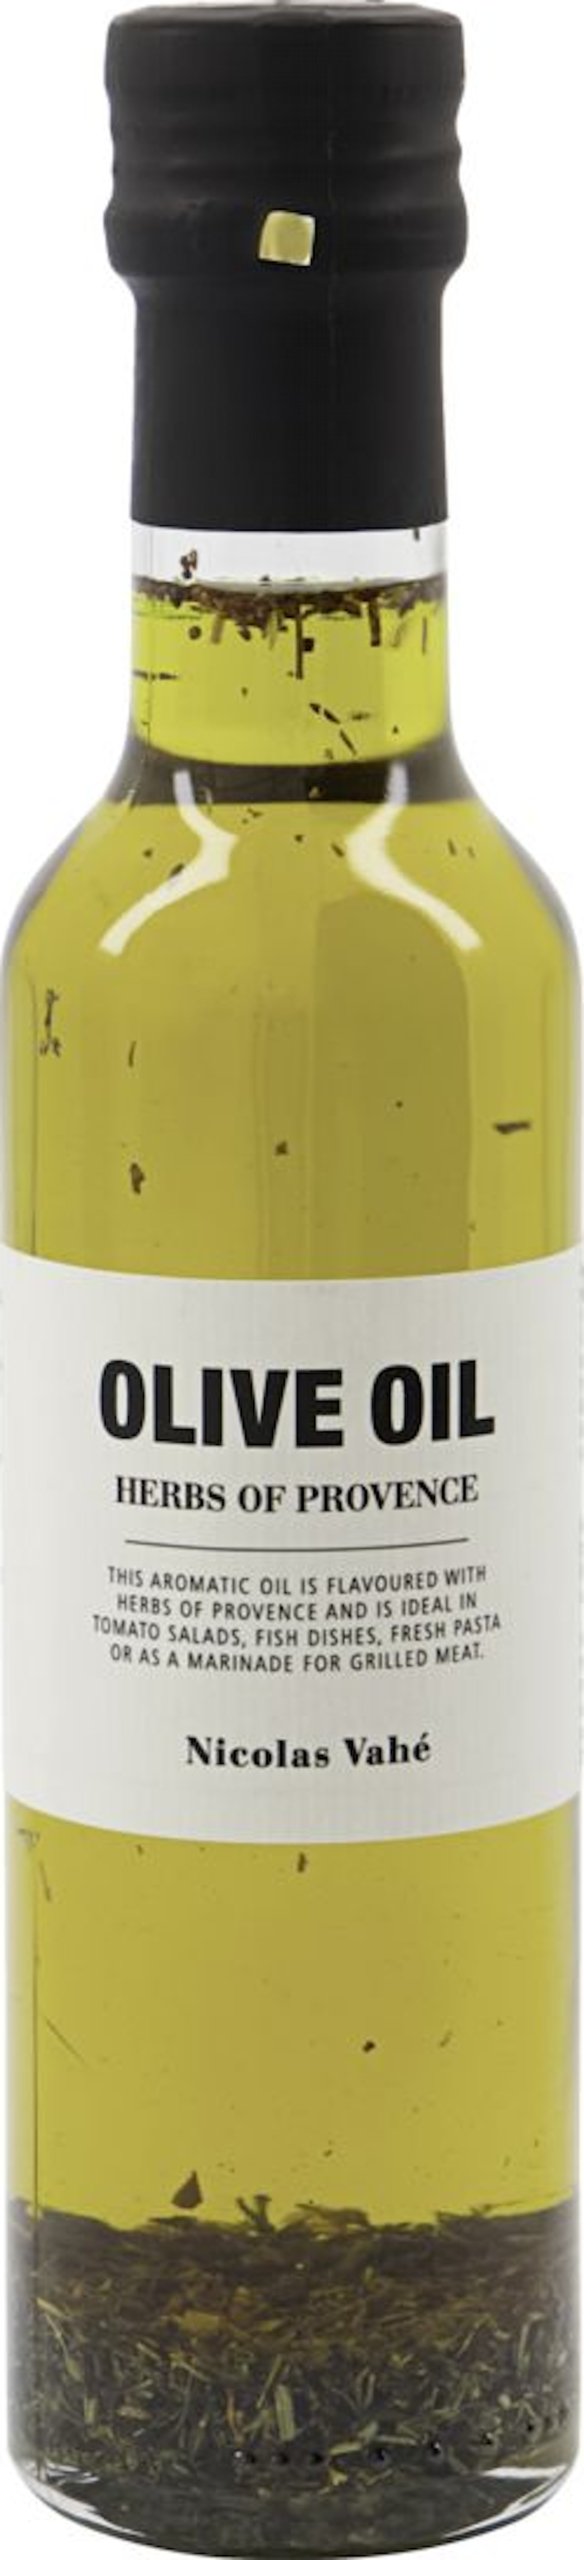 Olivenolie med herbes de provence by Nicolas Vahé (D: 5 cm. x H: 22,5 cm., Gul/Sort)